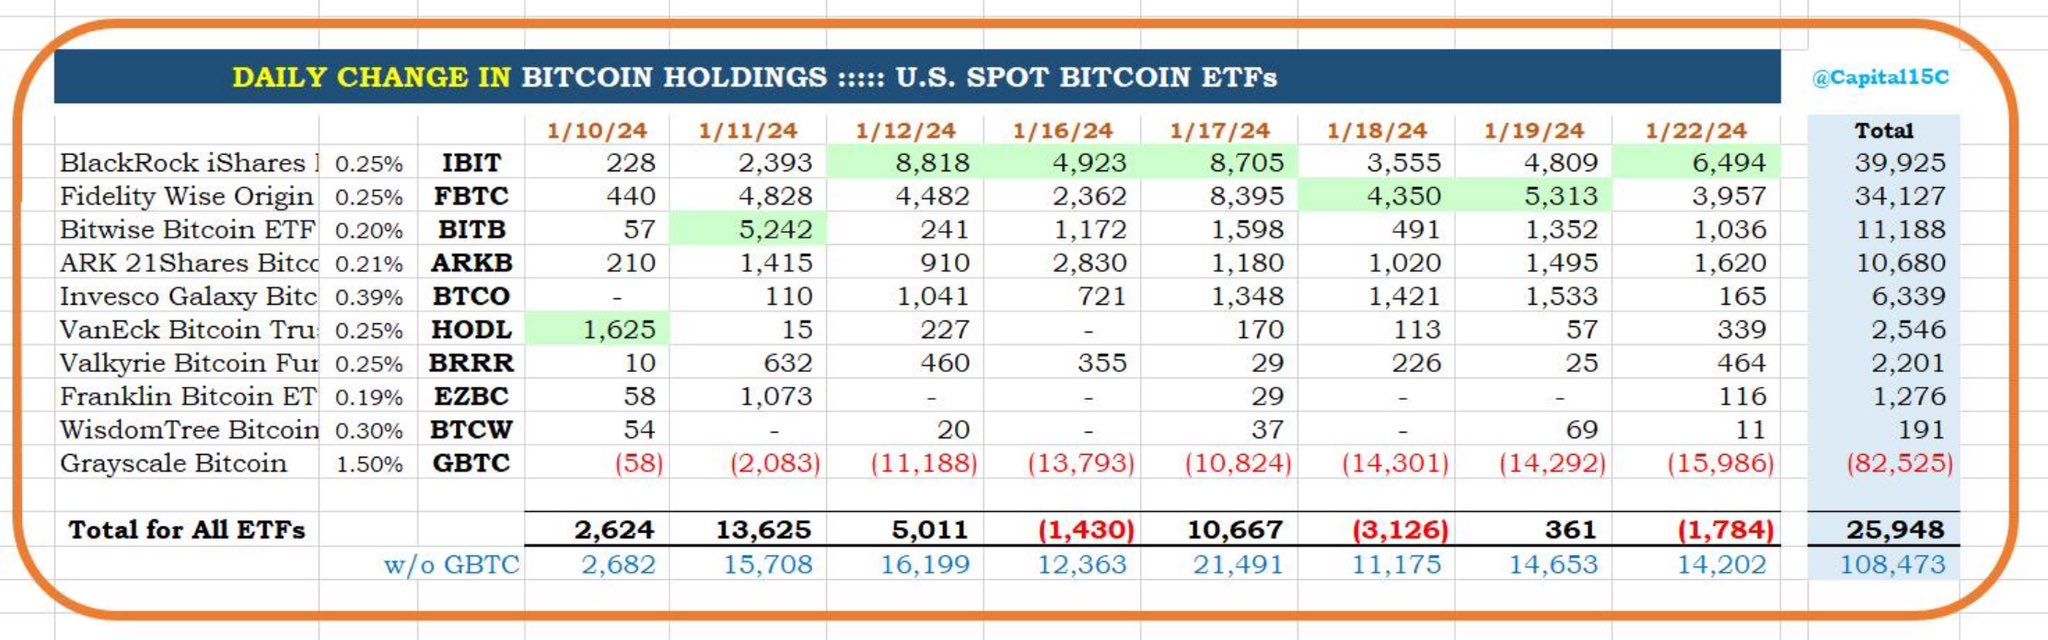 22 Ocak itibarıyla ETF Bitcoin varlıkları. Kaynak: X/@Capital15C